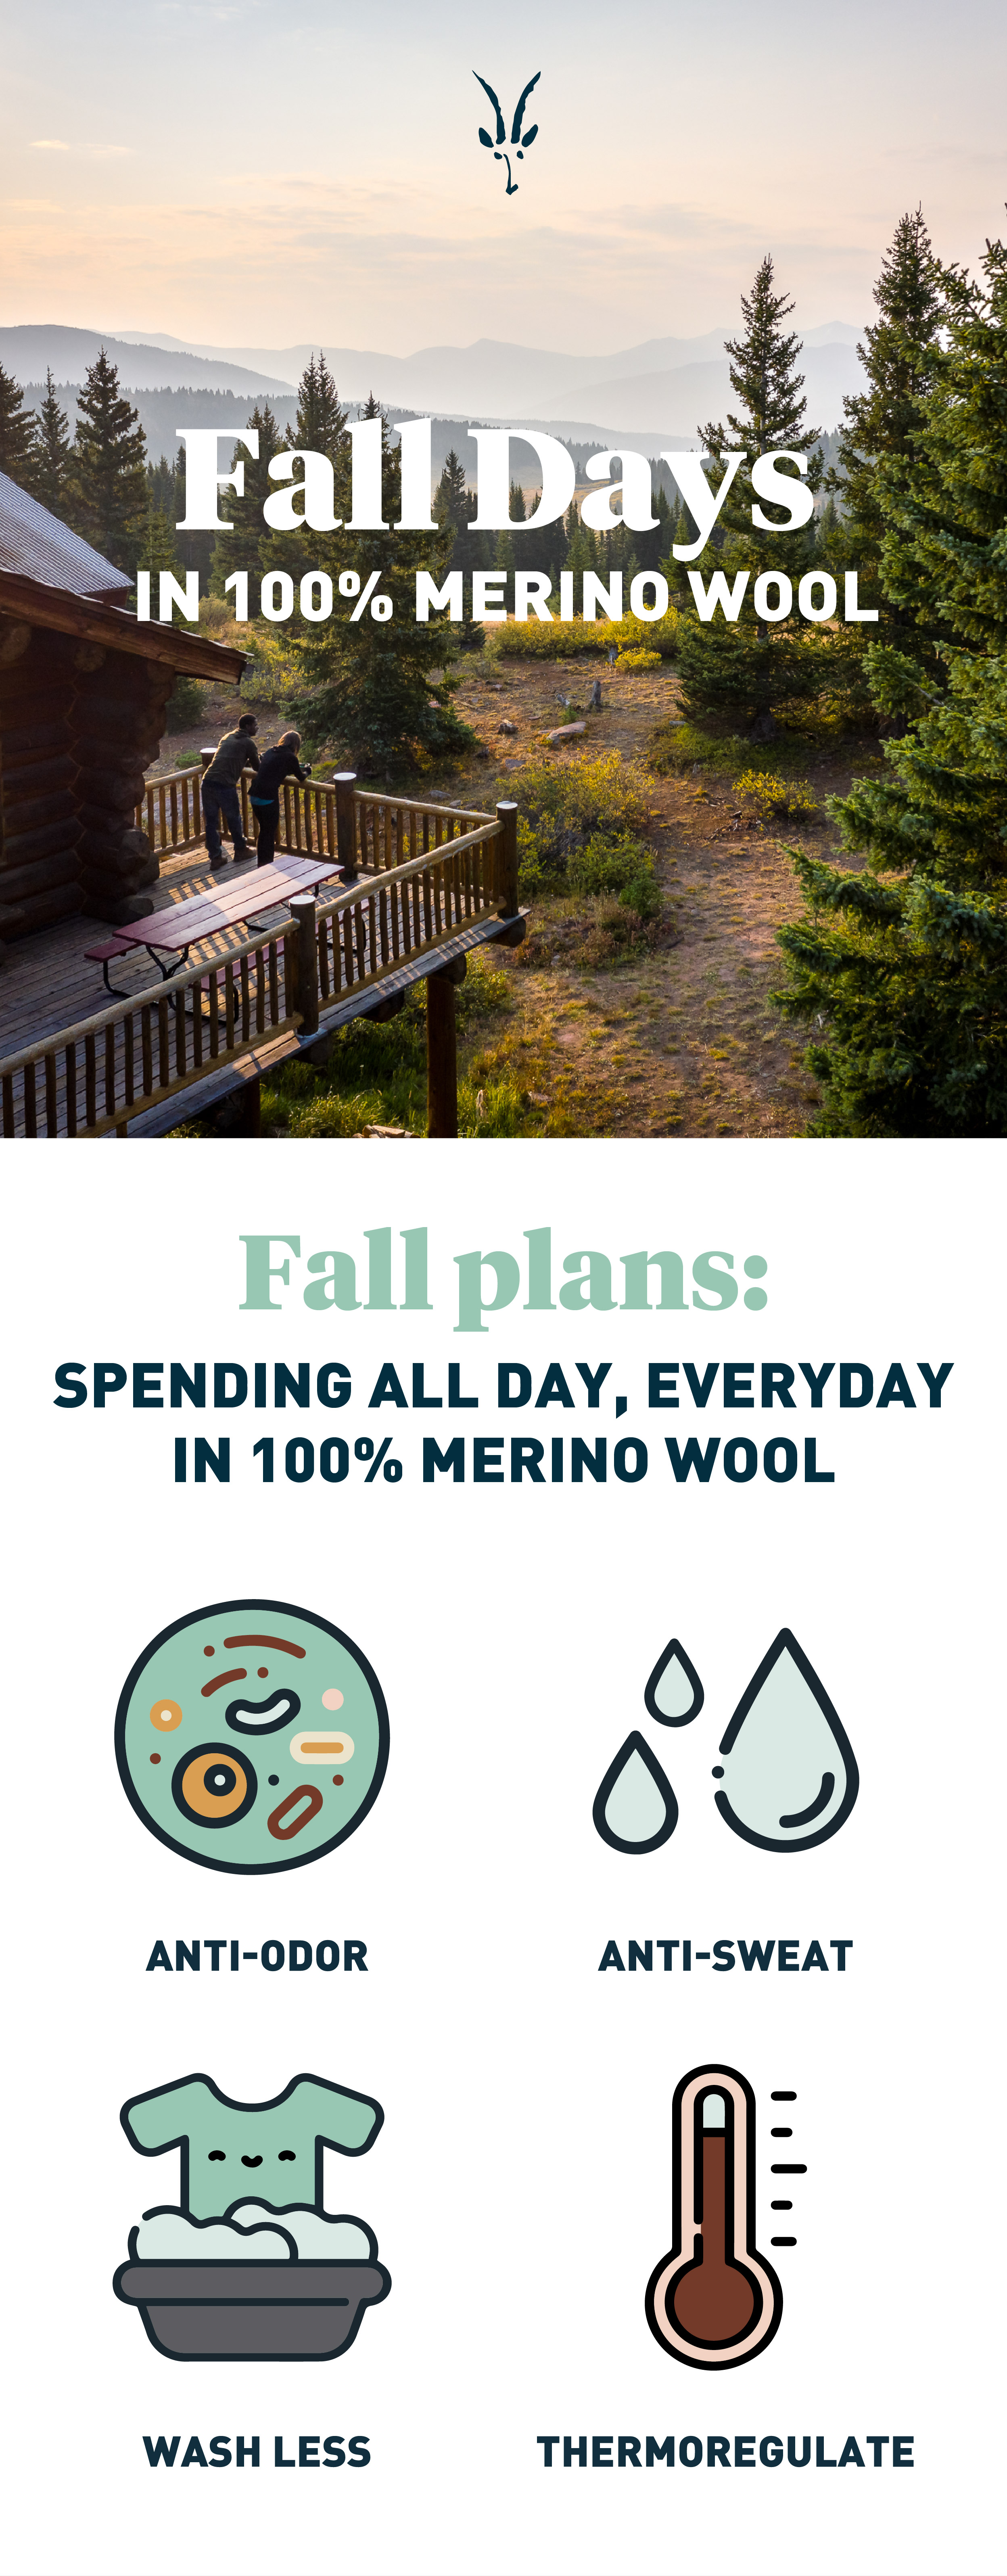 Fall Days in 100% Merino Wool